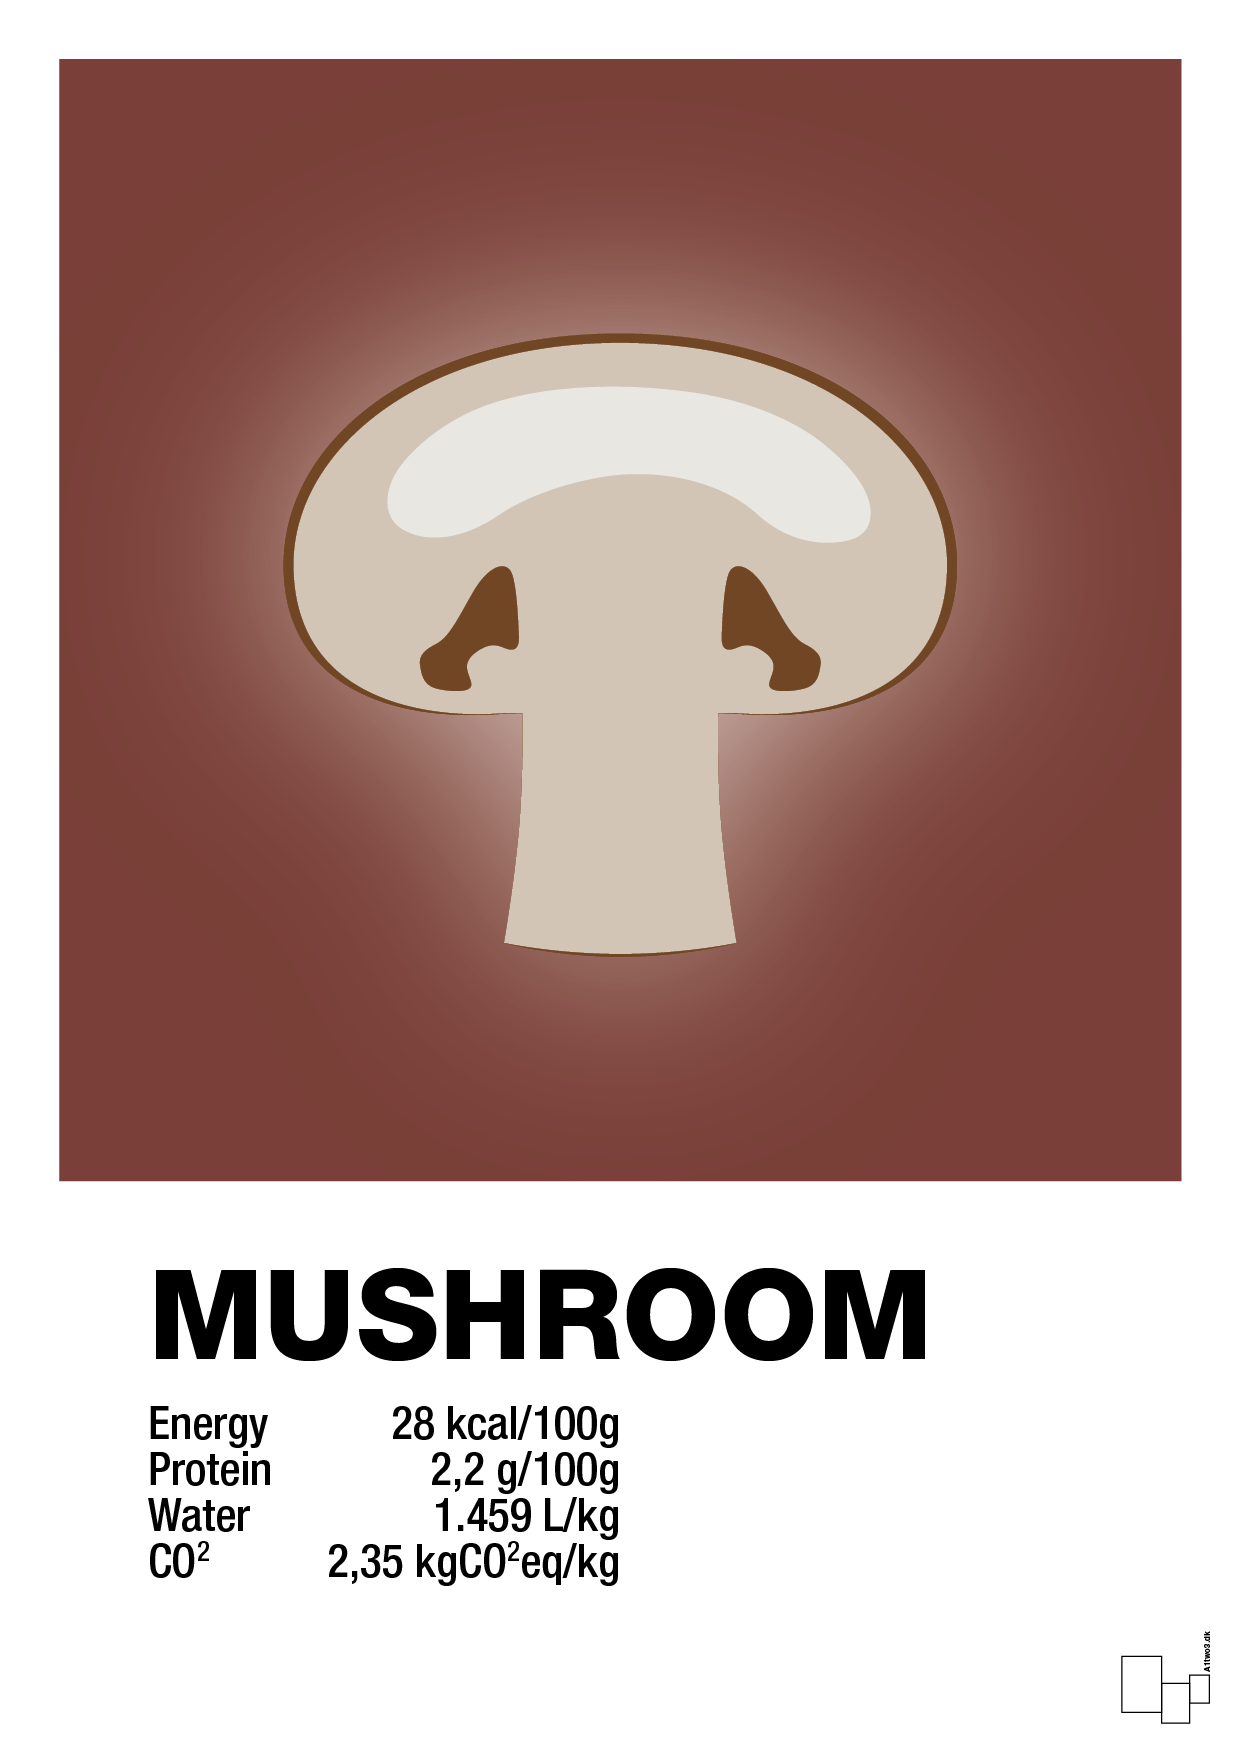 mushroom nutrition og miljø - Plakat med Mad & Drikke i Red Pepper